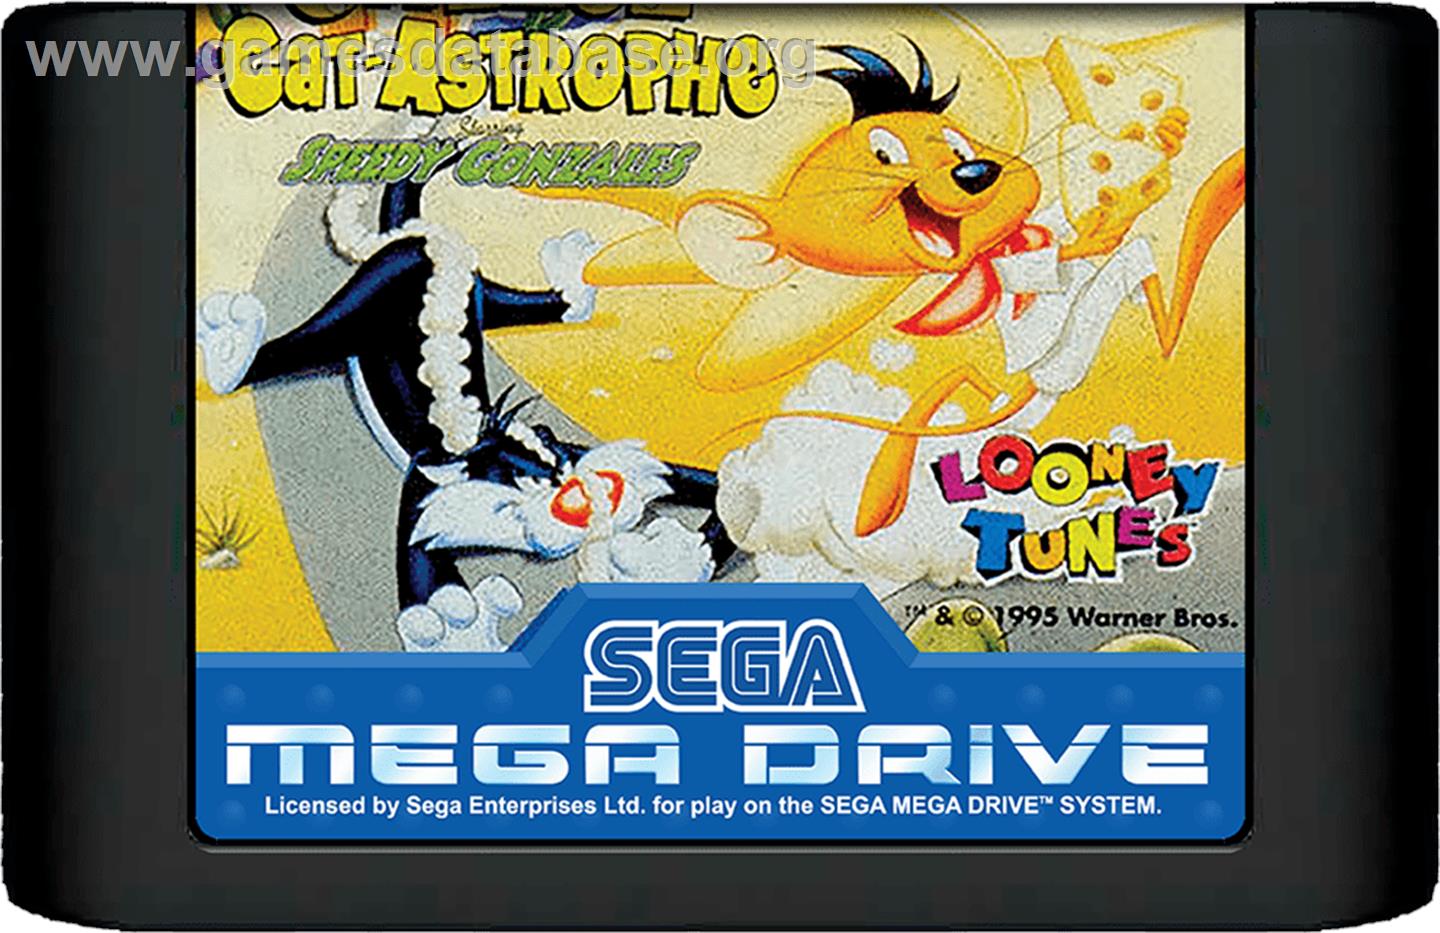 Cheese Cat-Astrophe starring Speedy Gonzales - Sega Genesis - Artwork - Cartridge